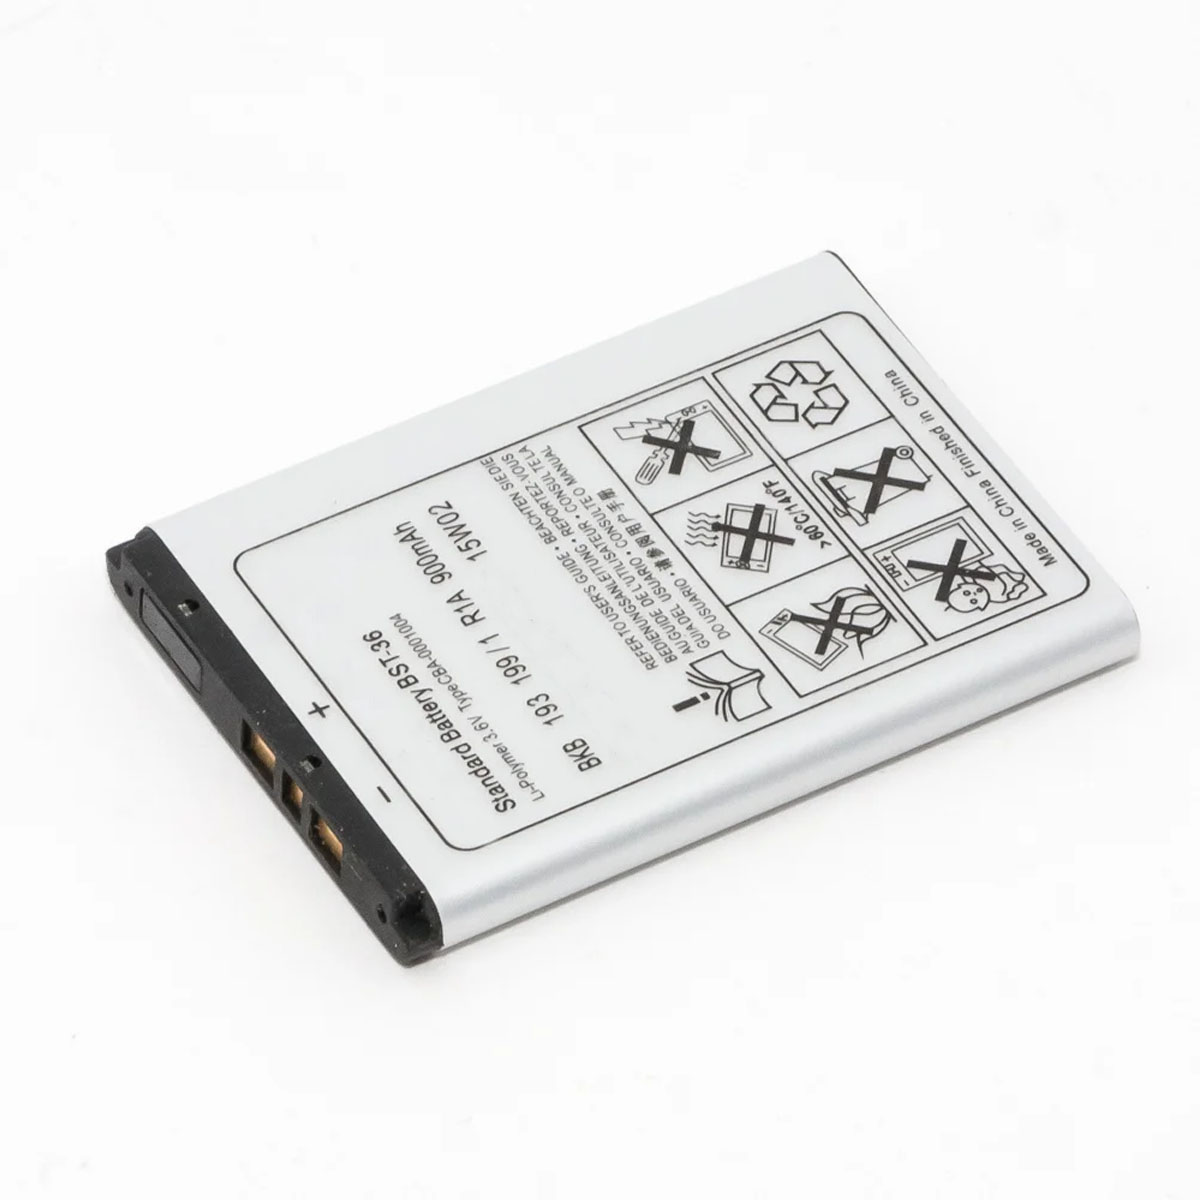 АКБ (Аккумулятор) BST-36 для Sony Ericsson, 900mAh, цвет серый